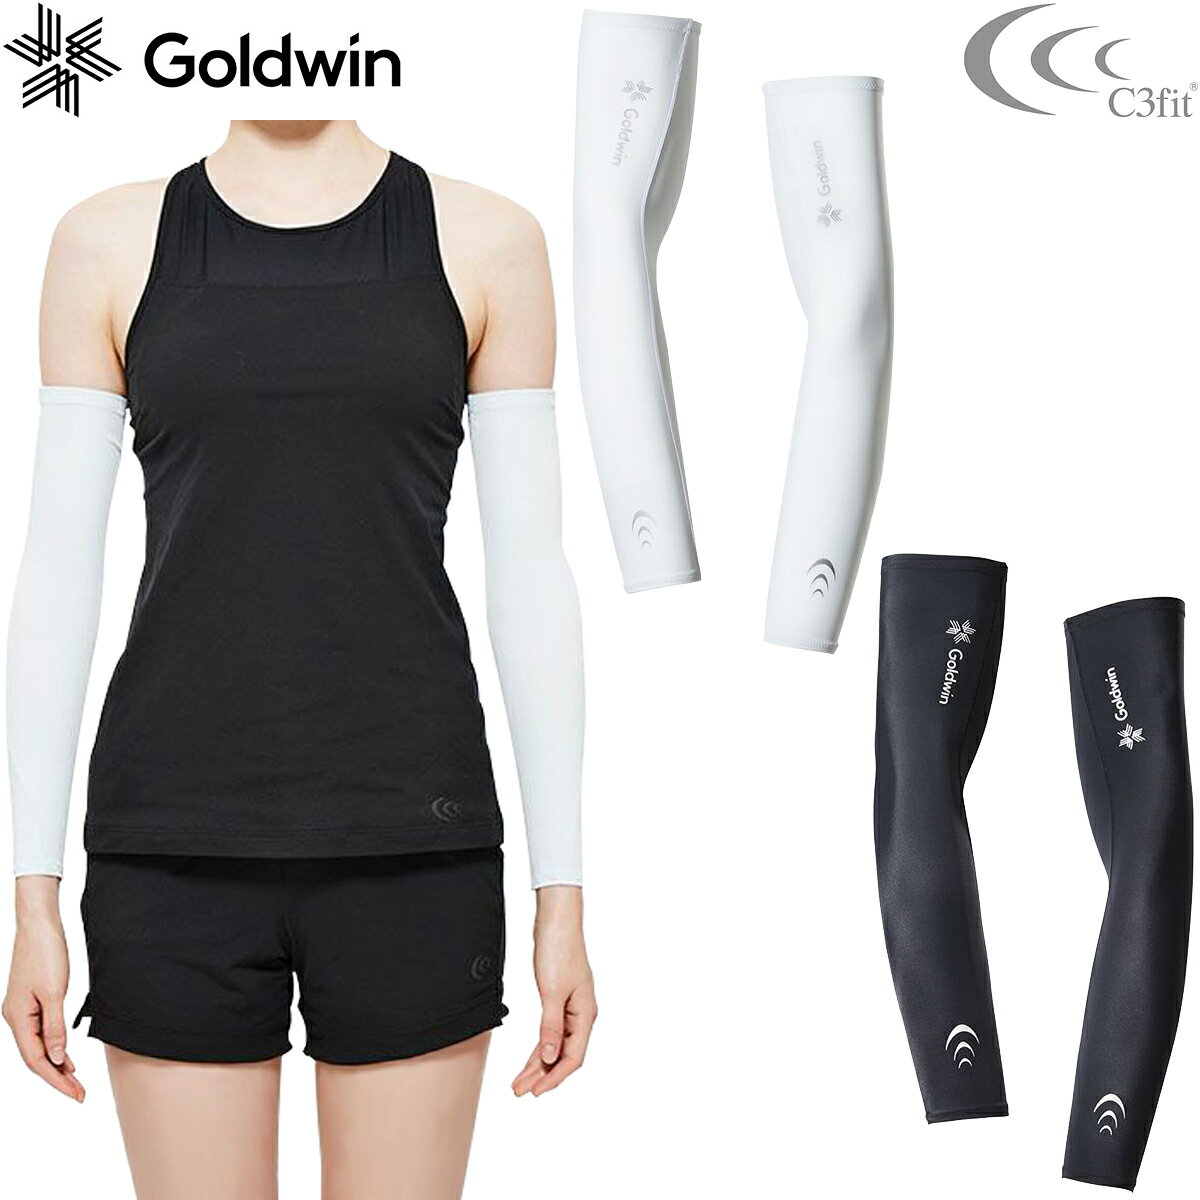 Goldwin ゴールドウィン 正規品 C3fit シースリーフィット 男女兼用 インスピレーション アームスリーブ(両腕用) 「 GC09390 」 